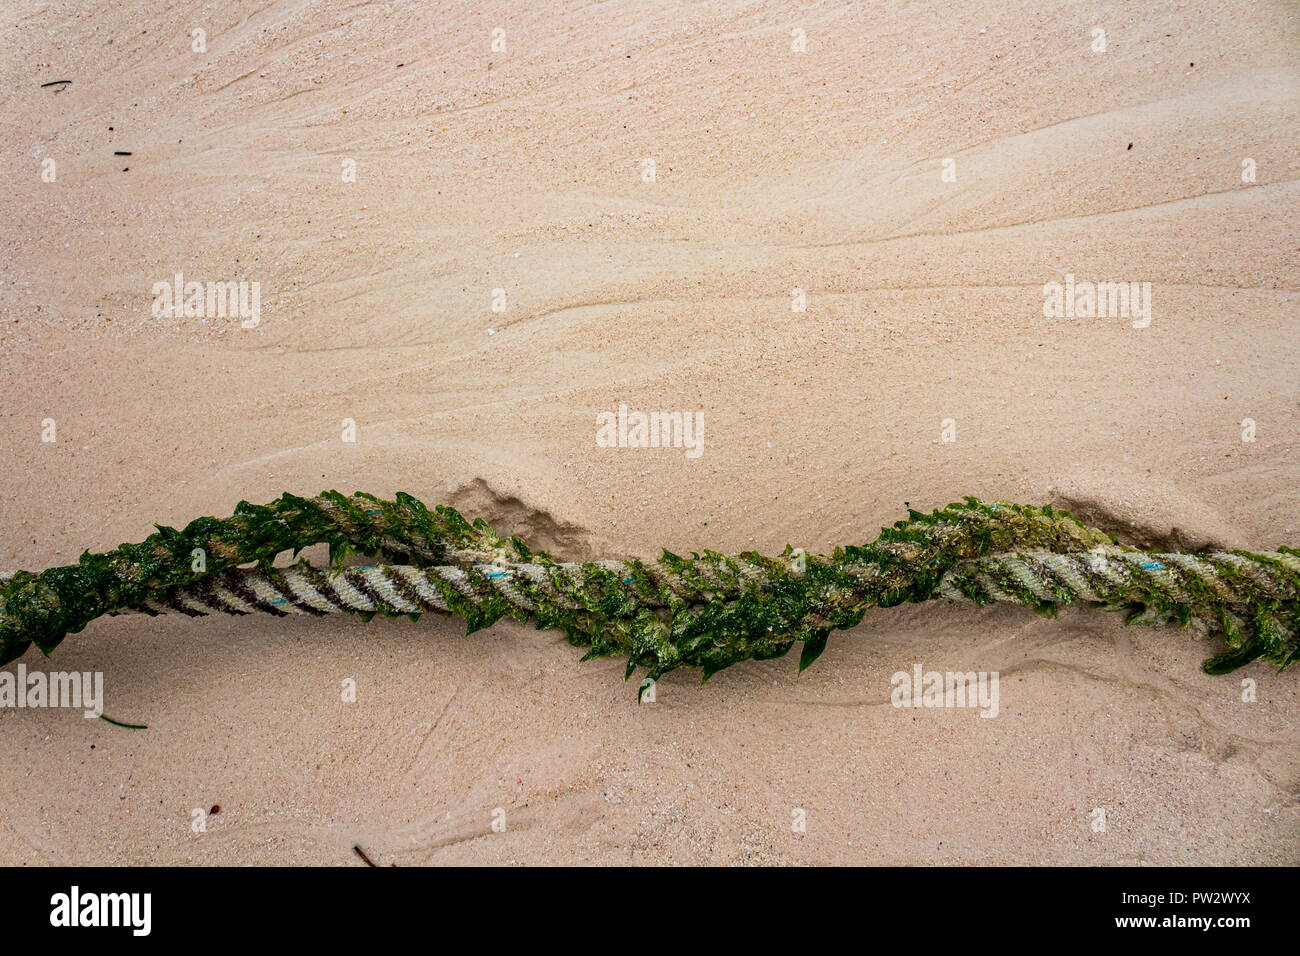 Festmacher Seil in Algen am Strand bedeckt. Sandy Hintergrund, verdrehen Seil hat Algen in Muster überwuchert. Stockfoto